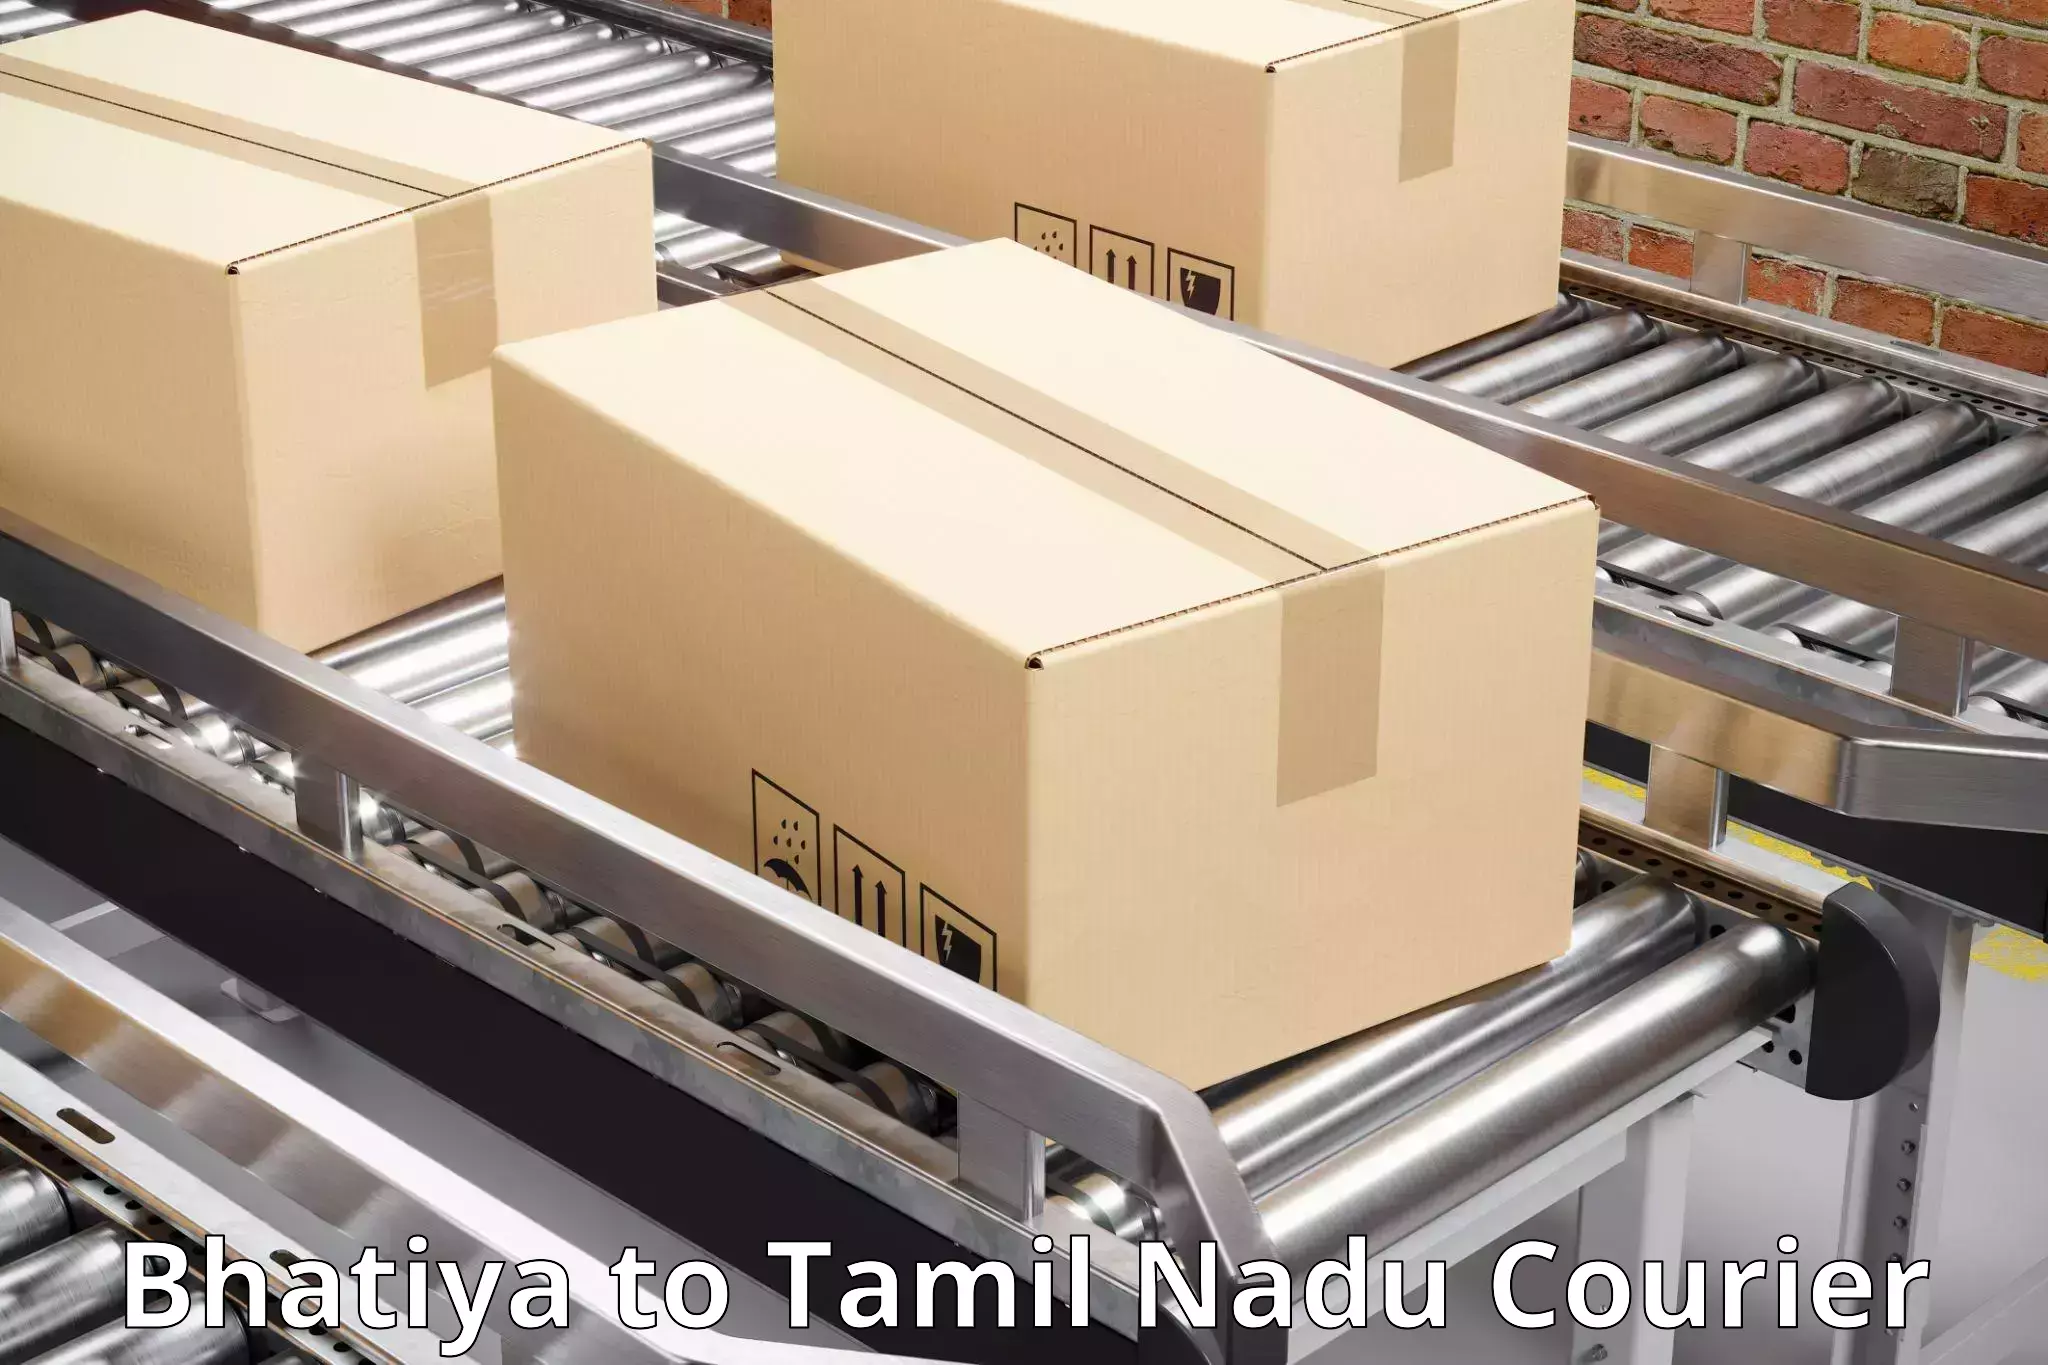 Personalized courier solutions Bhatiya to Kanyakumari